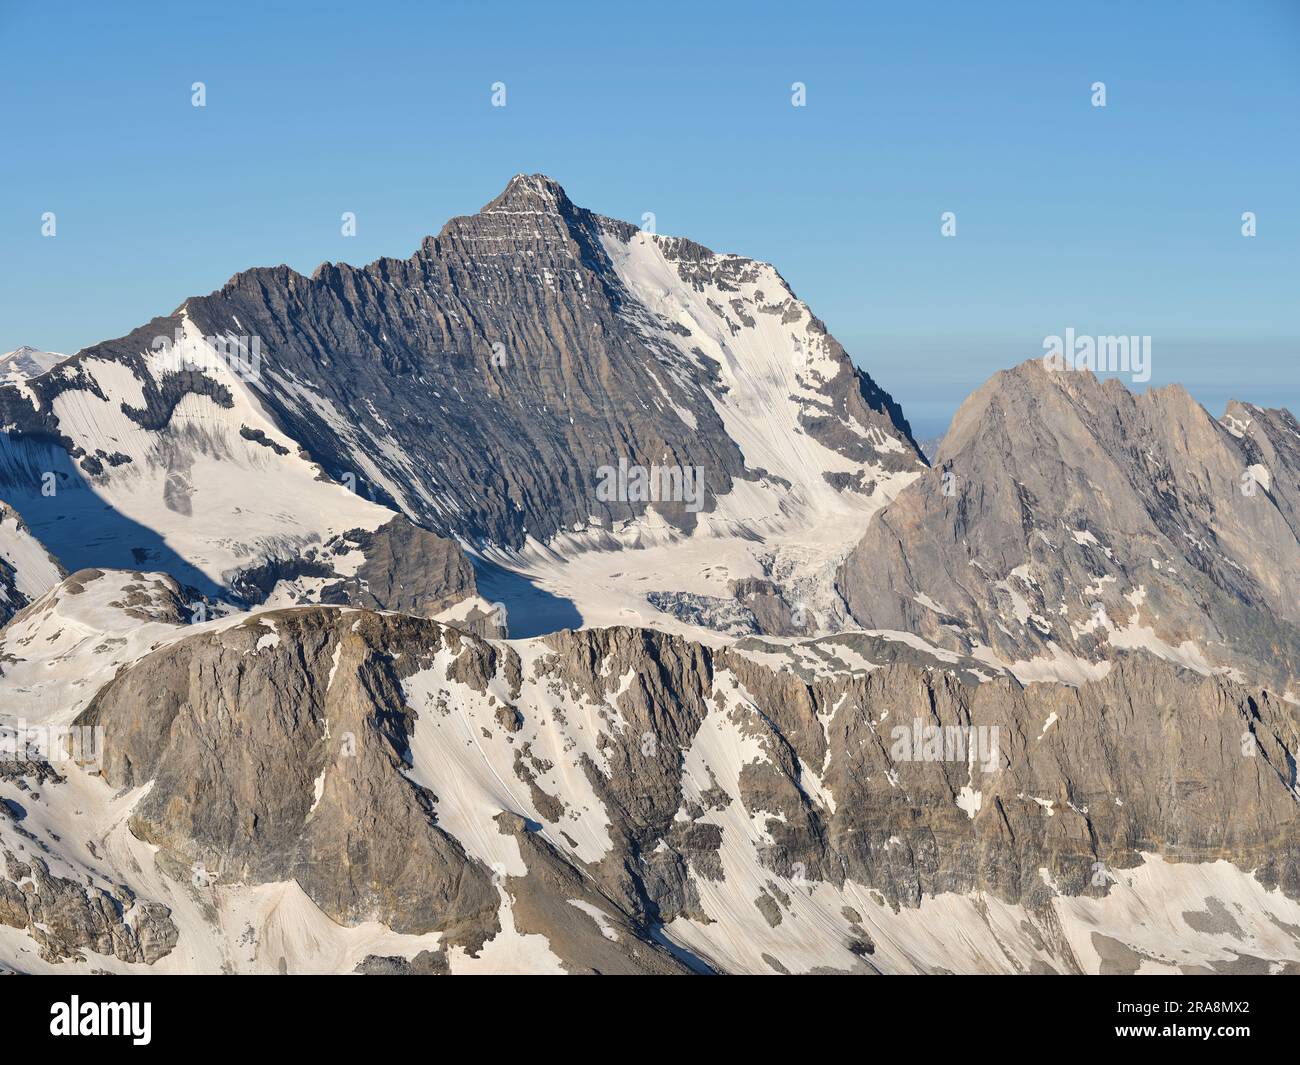 LUFTAUFNAHME. Auf der Nordseite des Mount Grande Casse (Höhe: 3855m m) ist dies der höchste Gipfel im Vanoise Massiv. Auvergne-Rhône-Alpes, Frankreich. Stockfoto